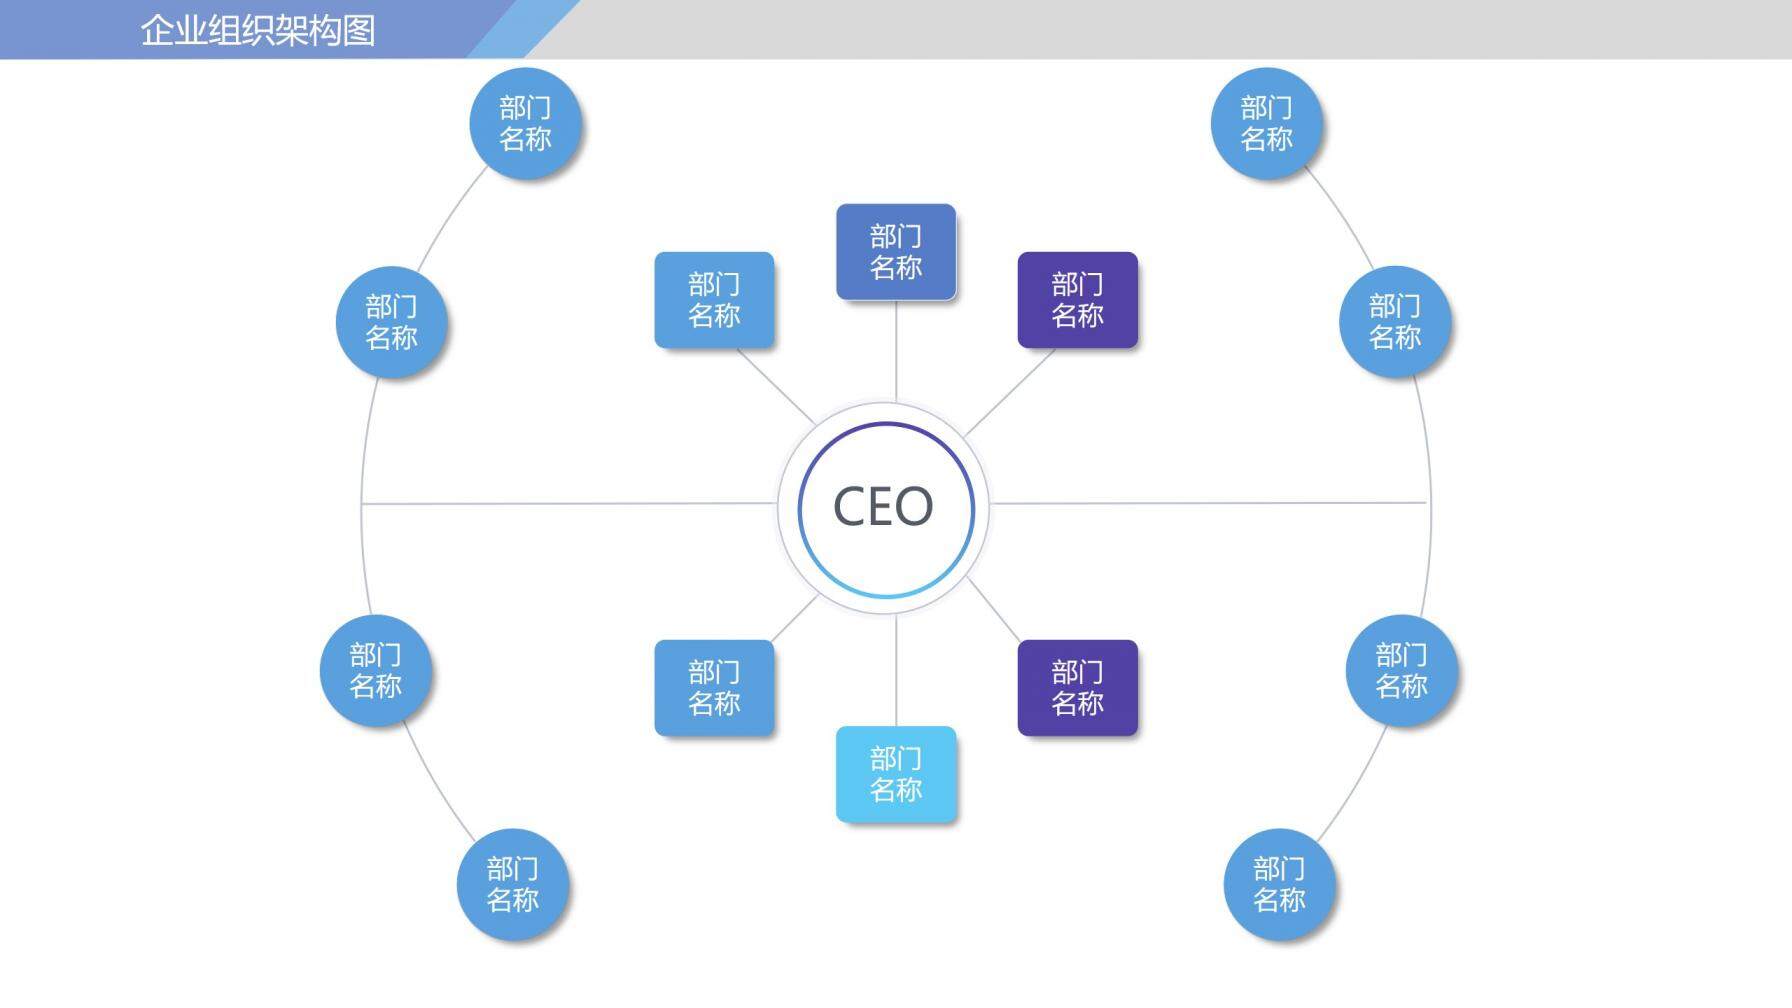 商务动态企业组织架构图PPT模板